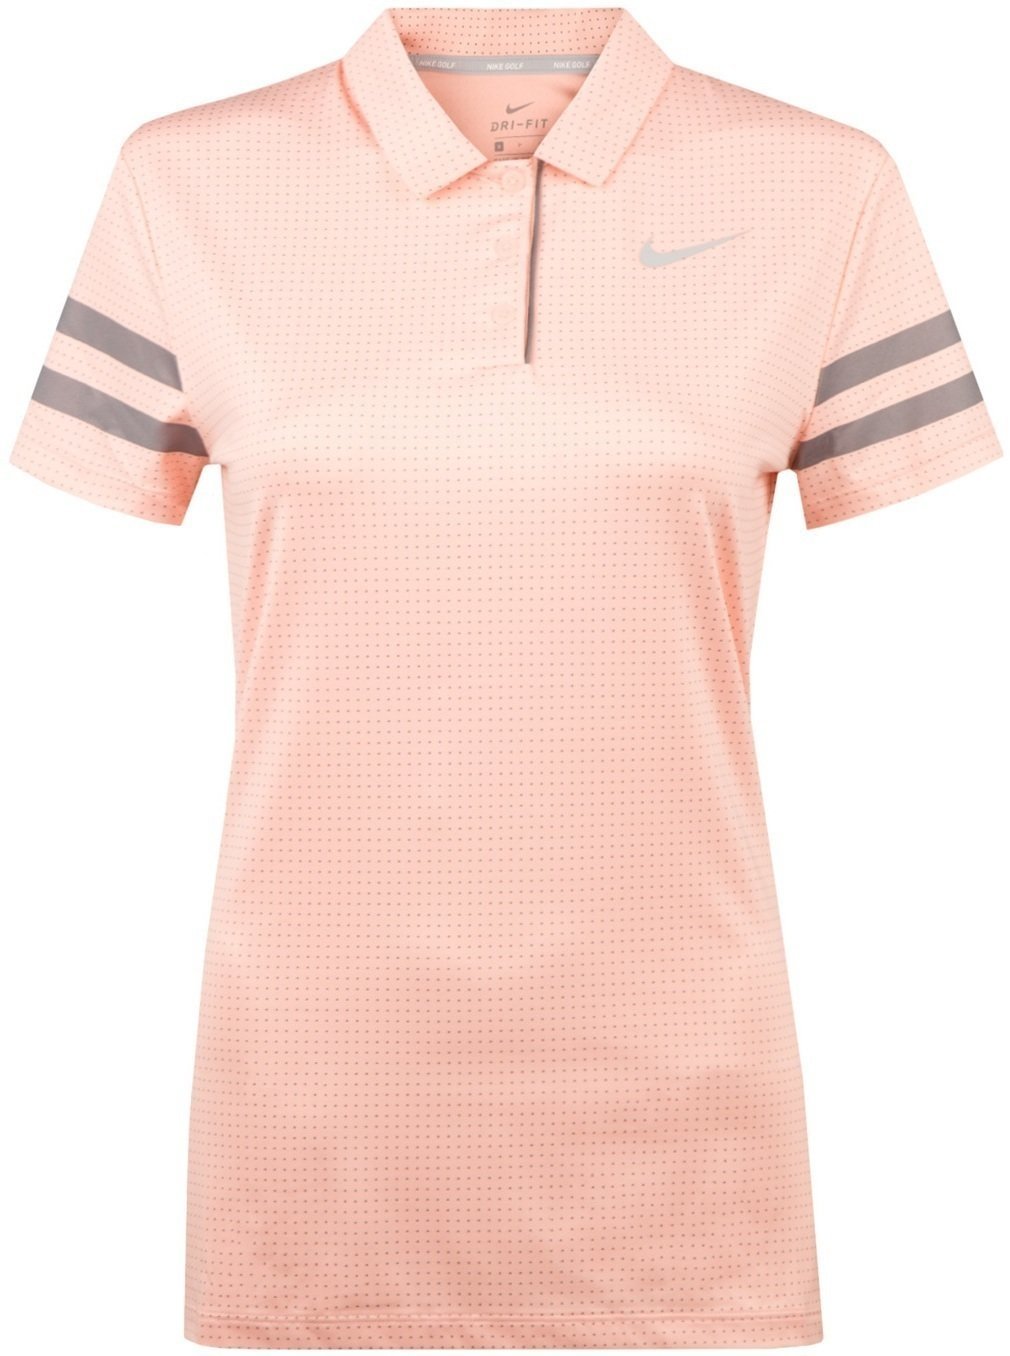 Polo košeľa Nike Dri-Fit Printed Dámska Polo Košeľa Storm Pink/Anthracite/White XS